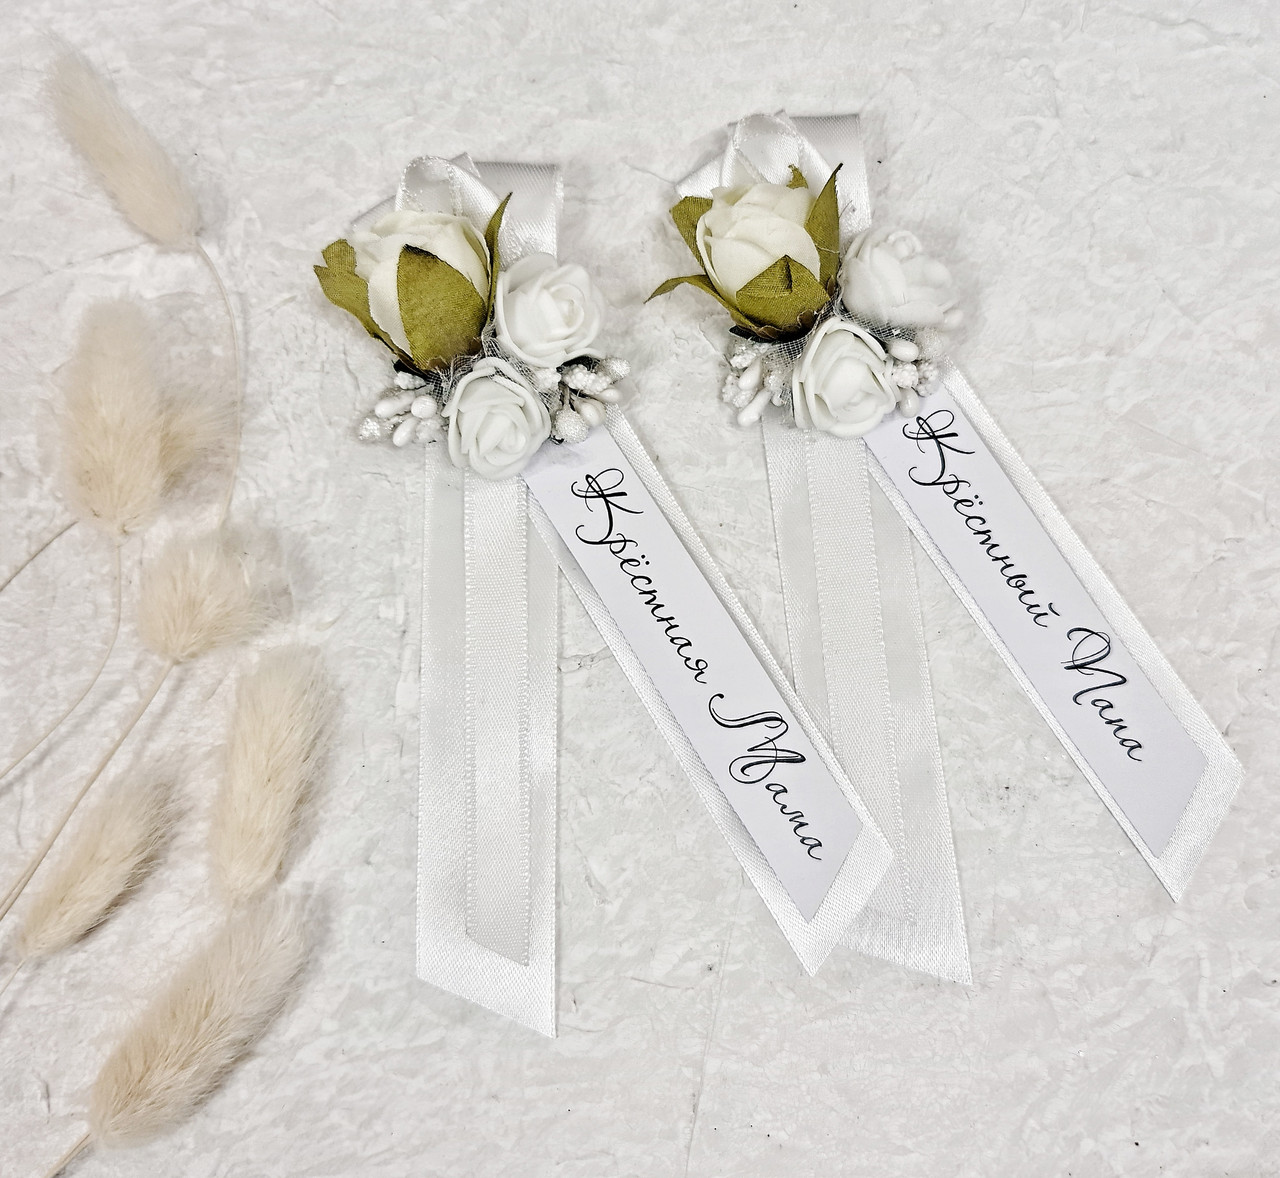 Ленточки для крестных родителей в белом цвете